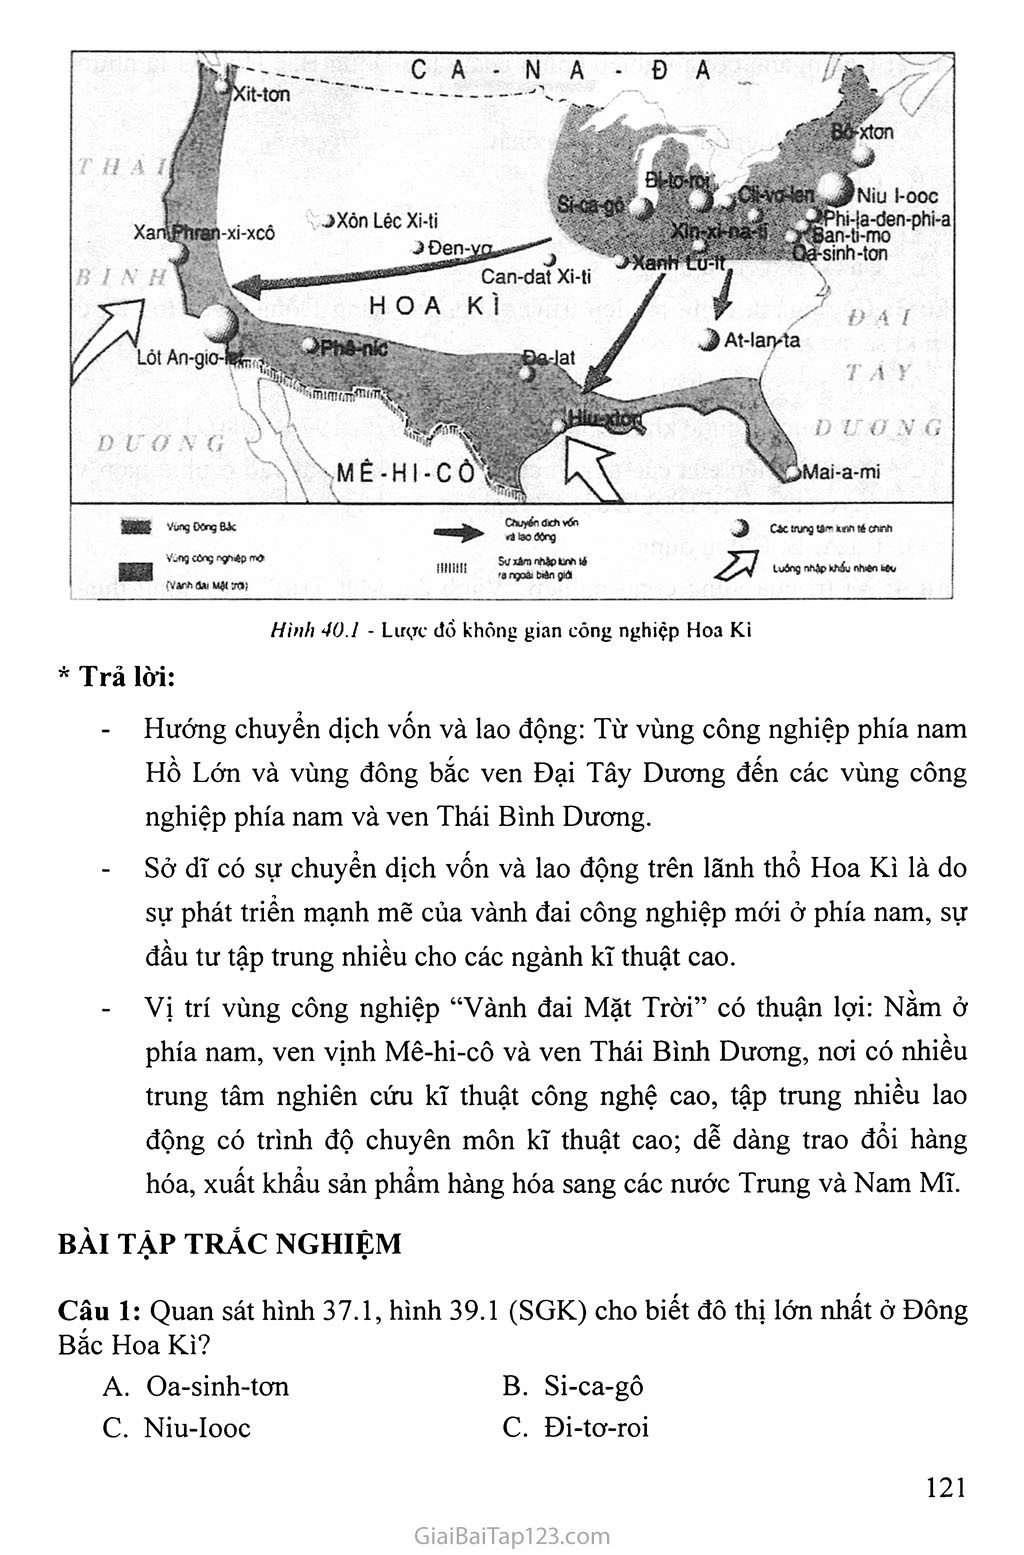 Bài 40: Thực hành: Tìm hiểu vùng công nghiệp truyền thống ở Đông Bắc Hoa Kì và vùng công nghiệp 